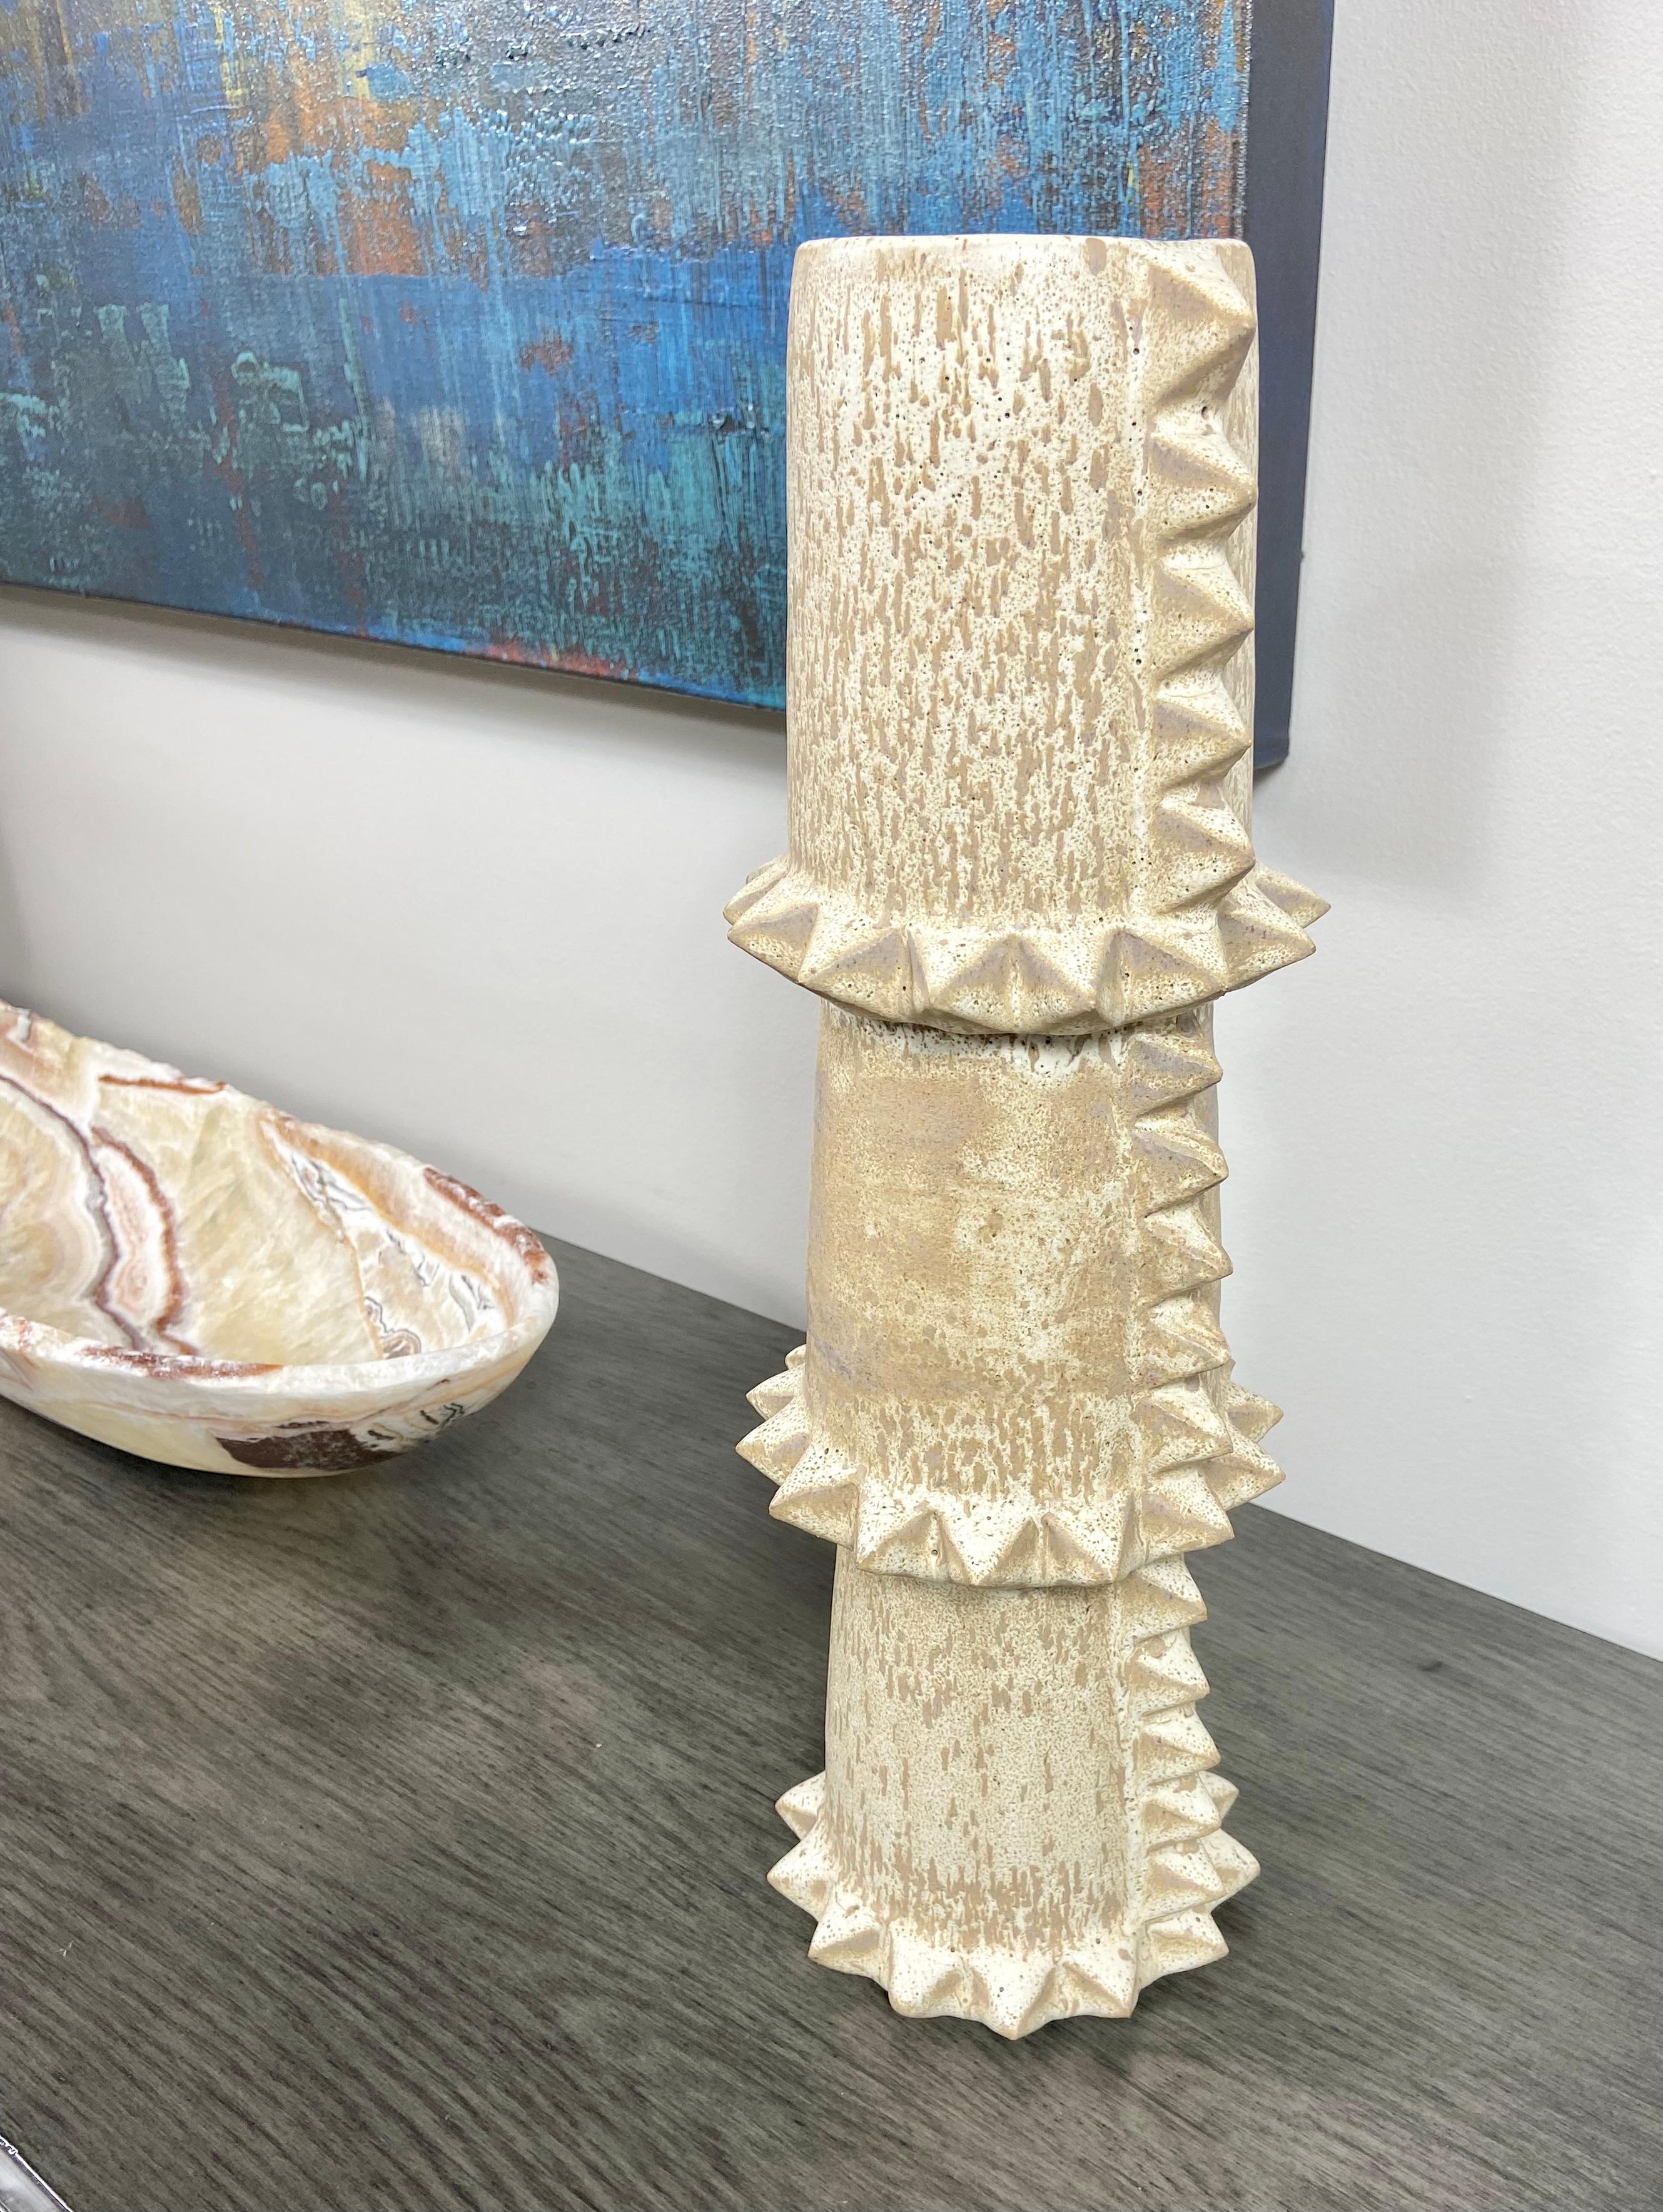 Eine hohe, totemähnliche Keramikvase von LGS Studio aus Los Angeles. Dieses einzigartige, handgefertigte Stück weist eine gesprenkelte Glasur auf, die von gebrochenem Weiß bis zu hellem Mocca reicht. Er ist sorgfältig von Hand geschnitzt und mit